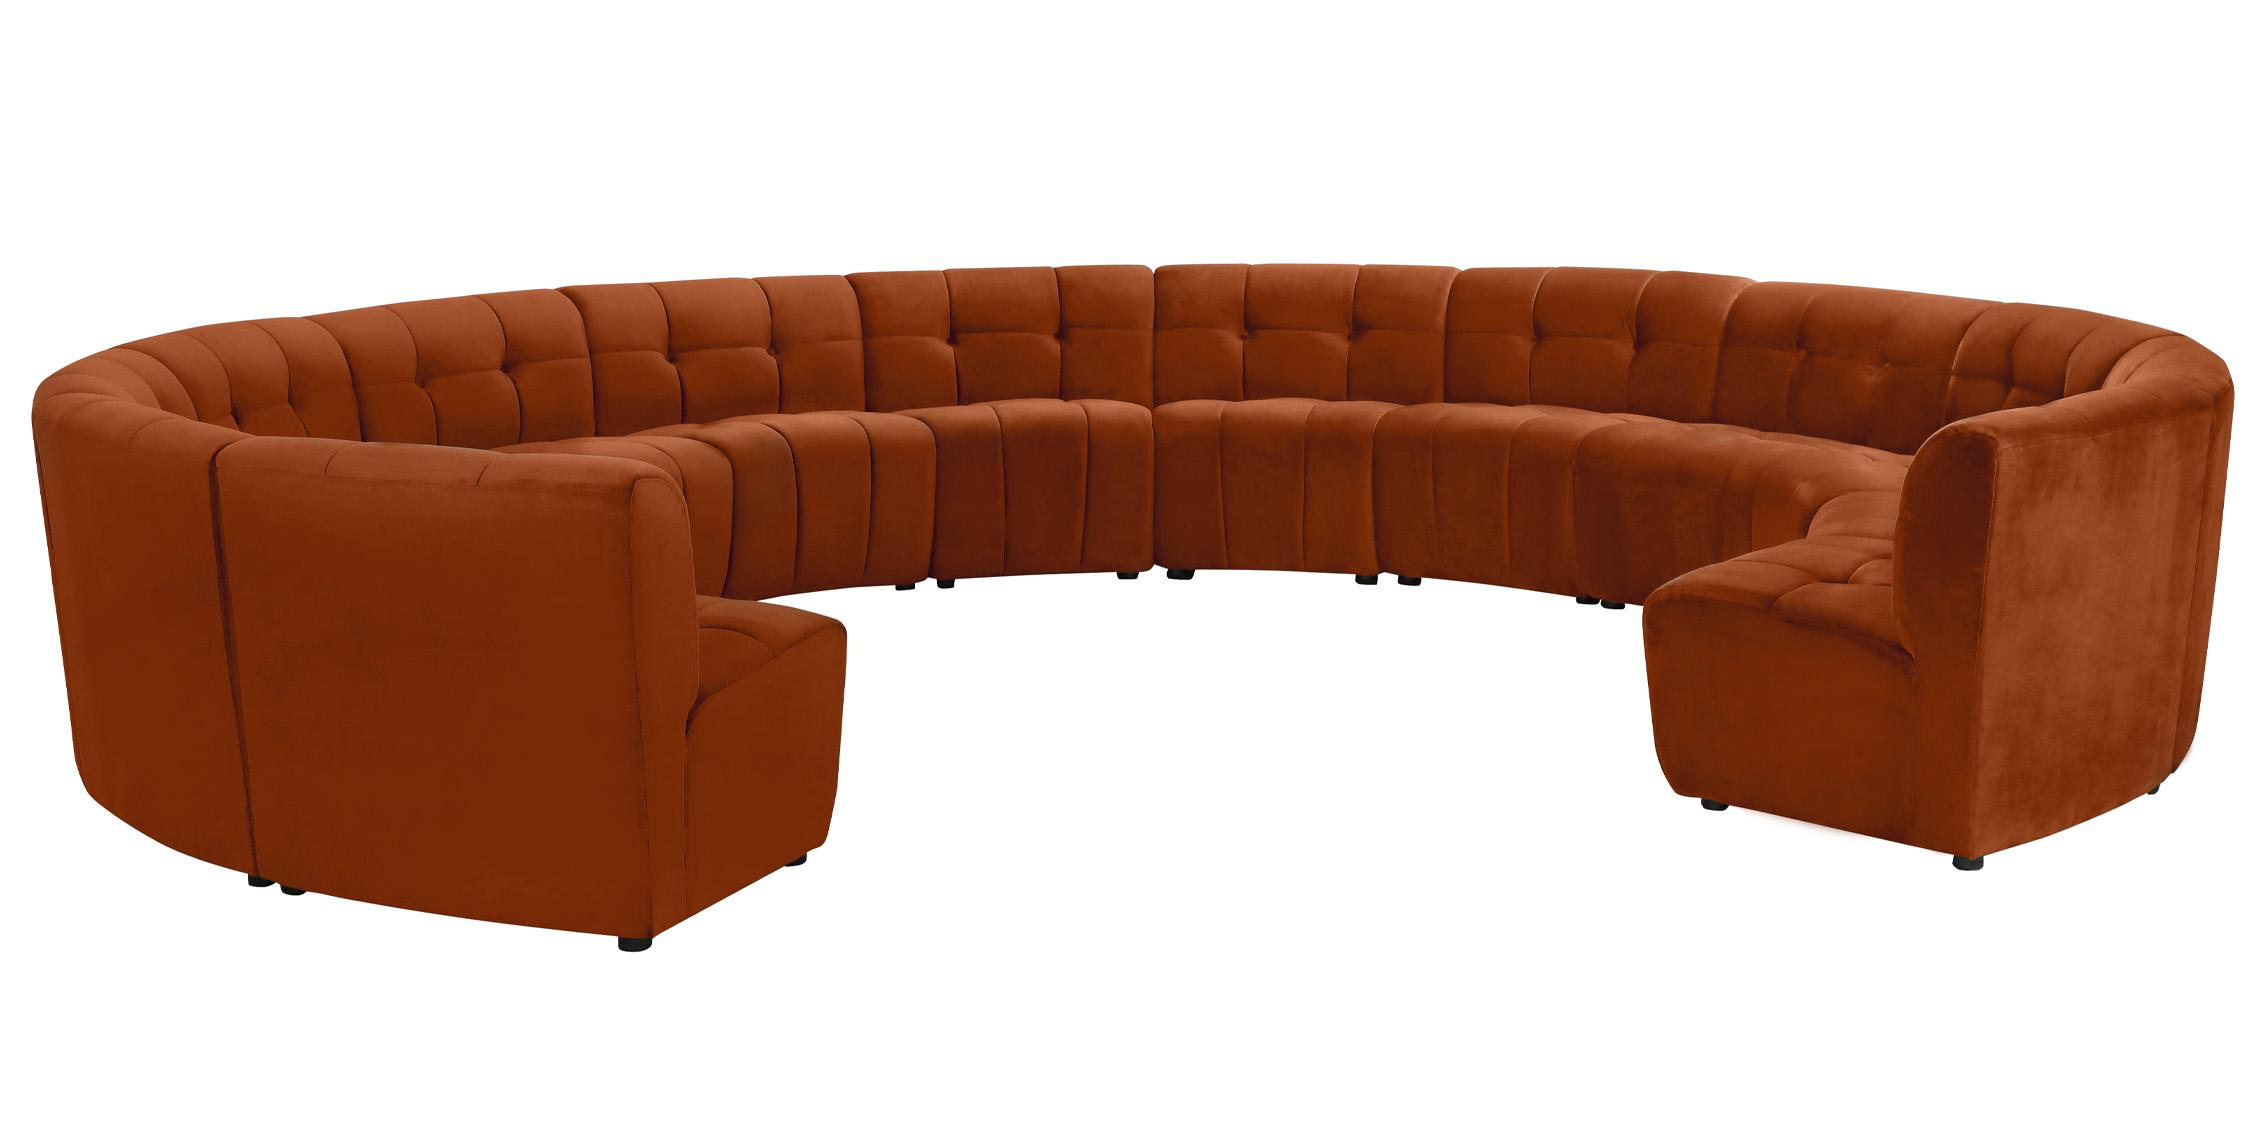 

    
645Cognac-13PC Meridian Furniture Modular Sectional Sofa
